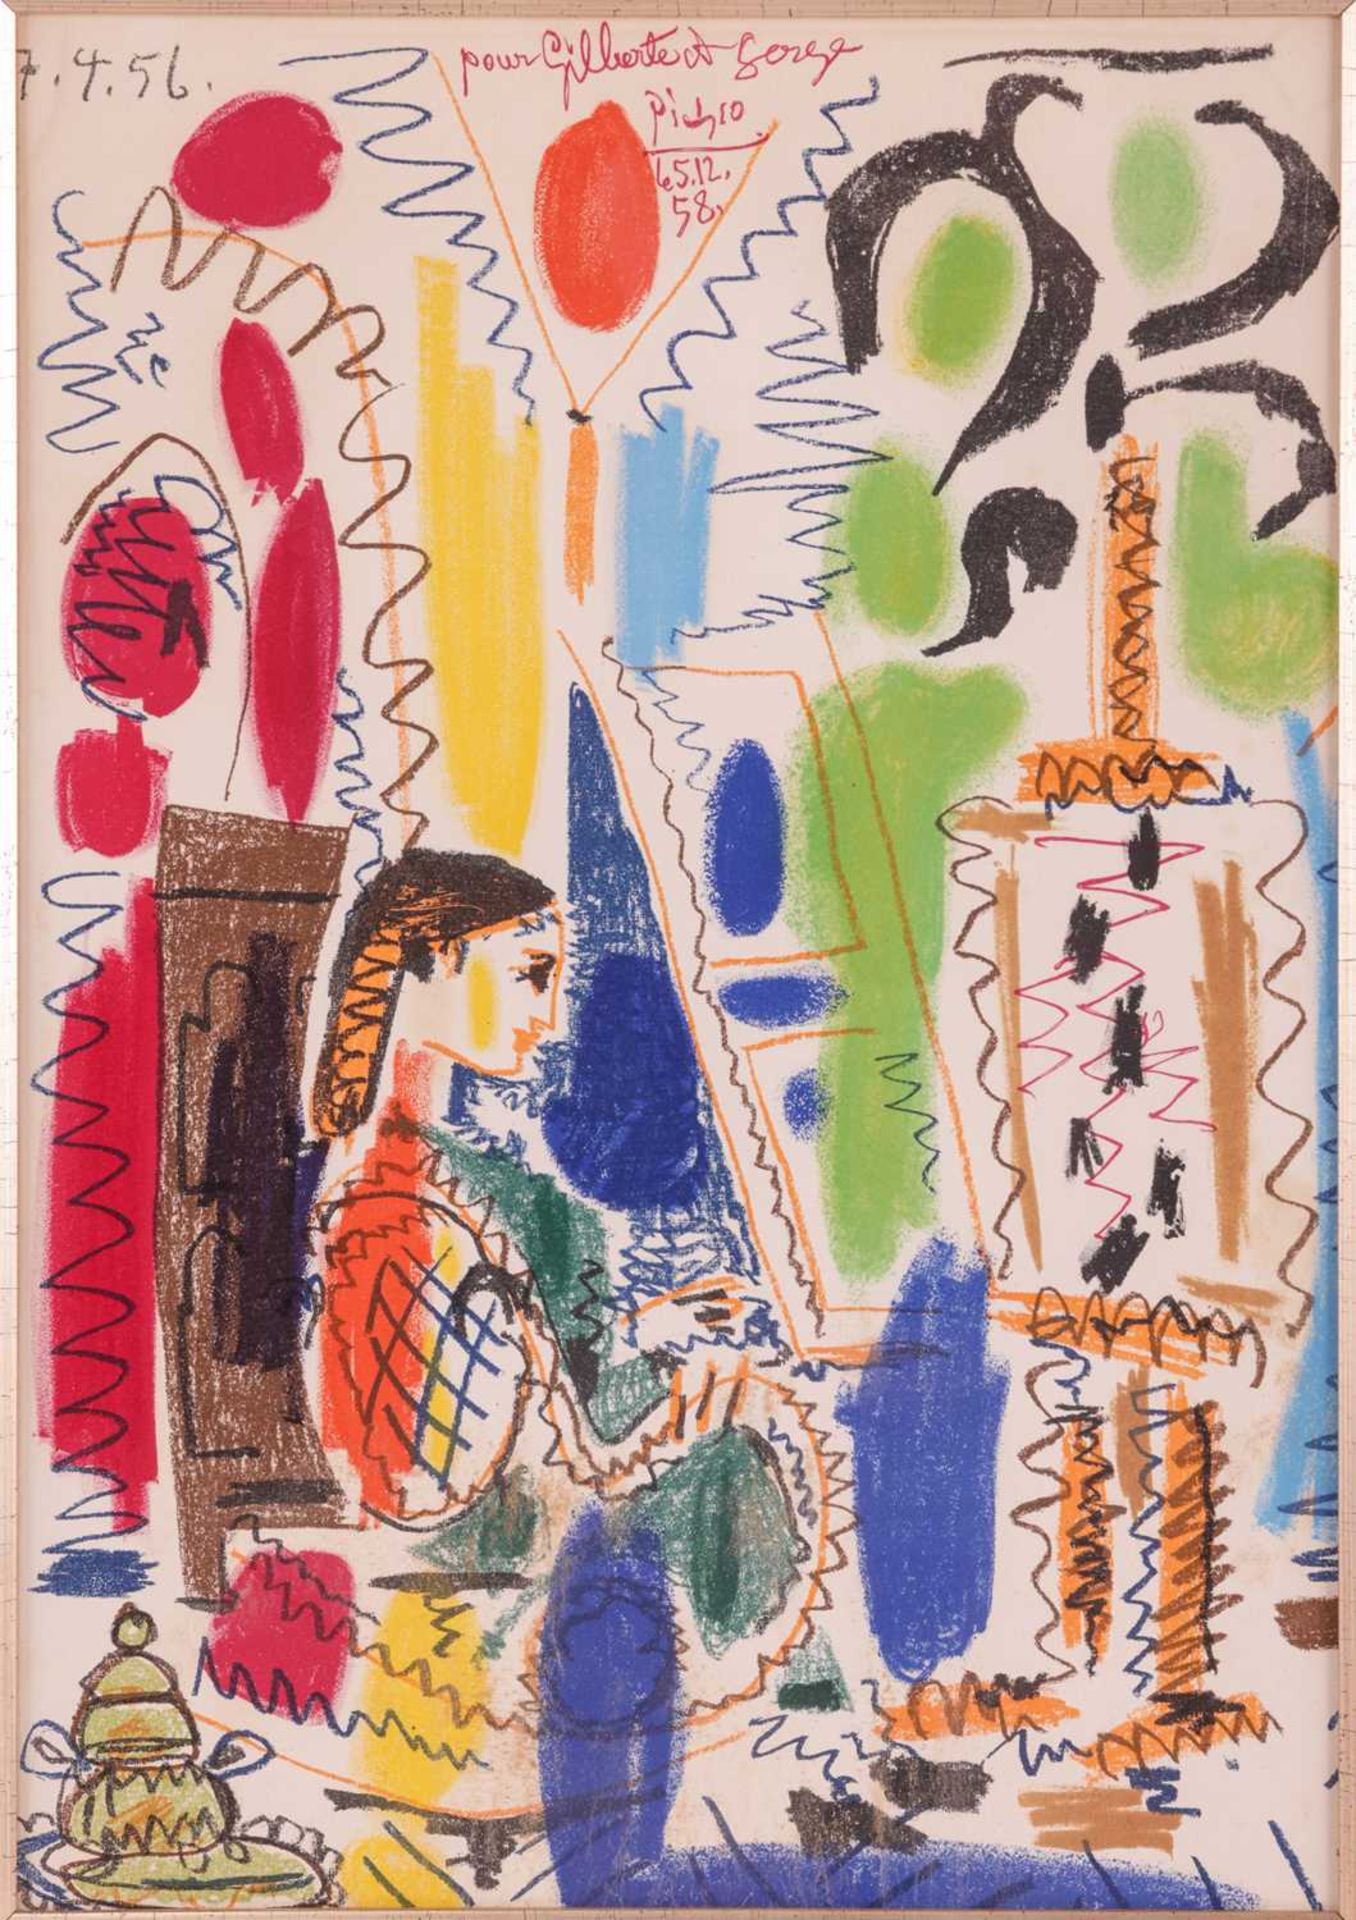 After Pablo Picasso (Spanish, 1881 - 1973), L'Atelier de Cannes (1958), colour lithograph, 43 x 30 c - Bild 3 aus 17